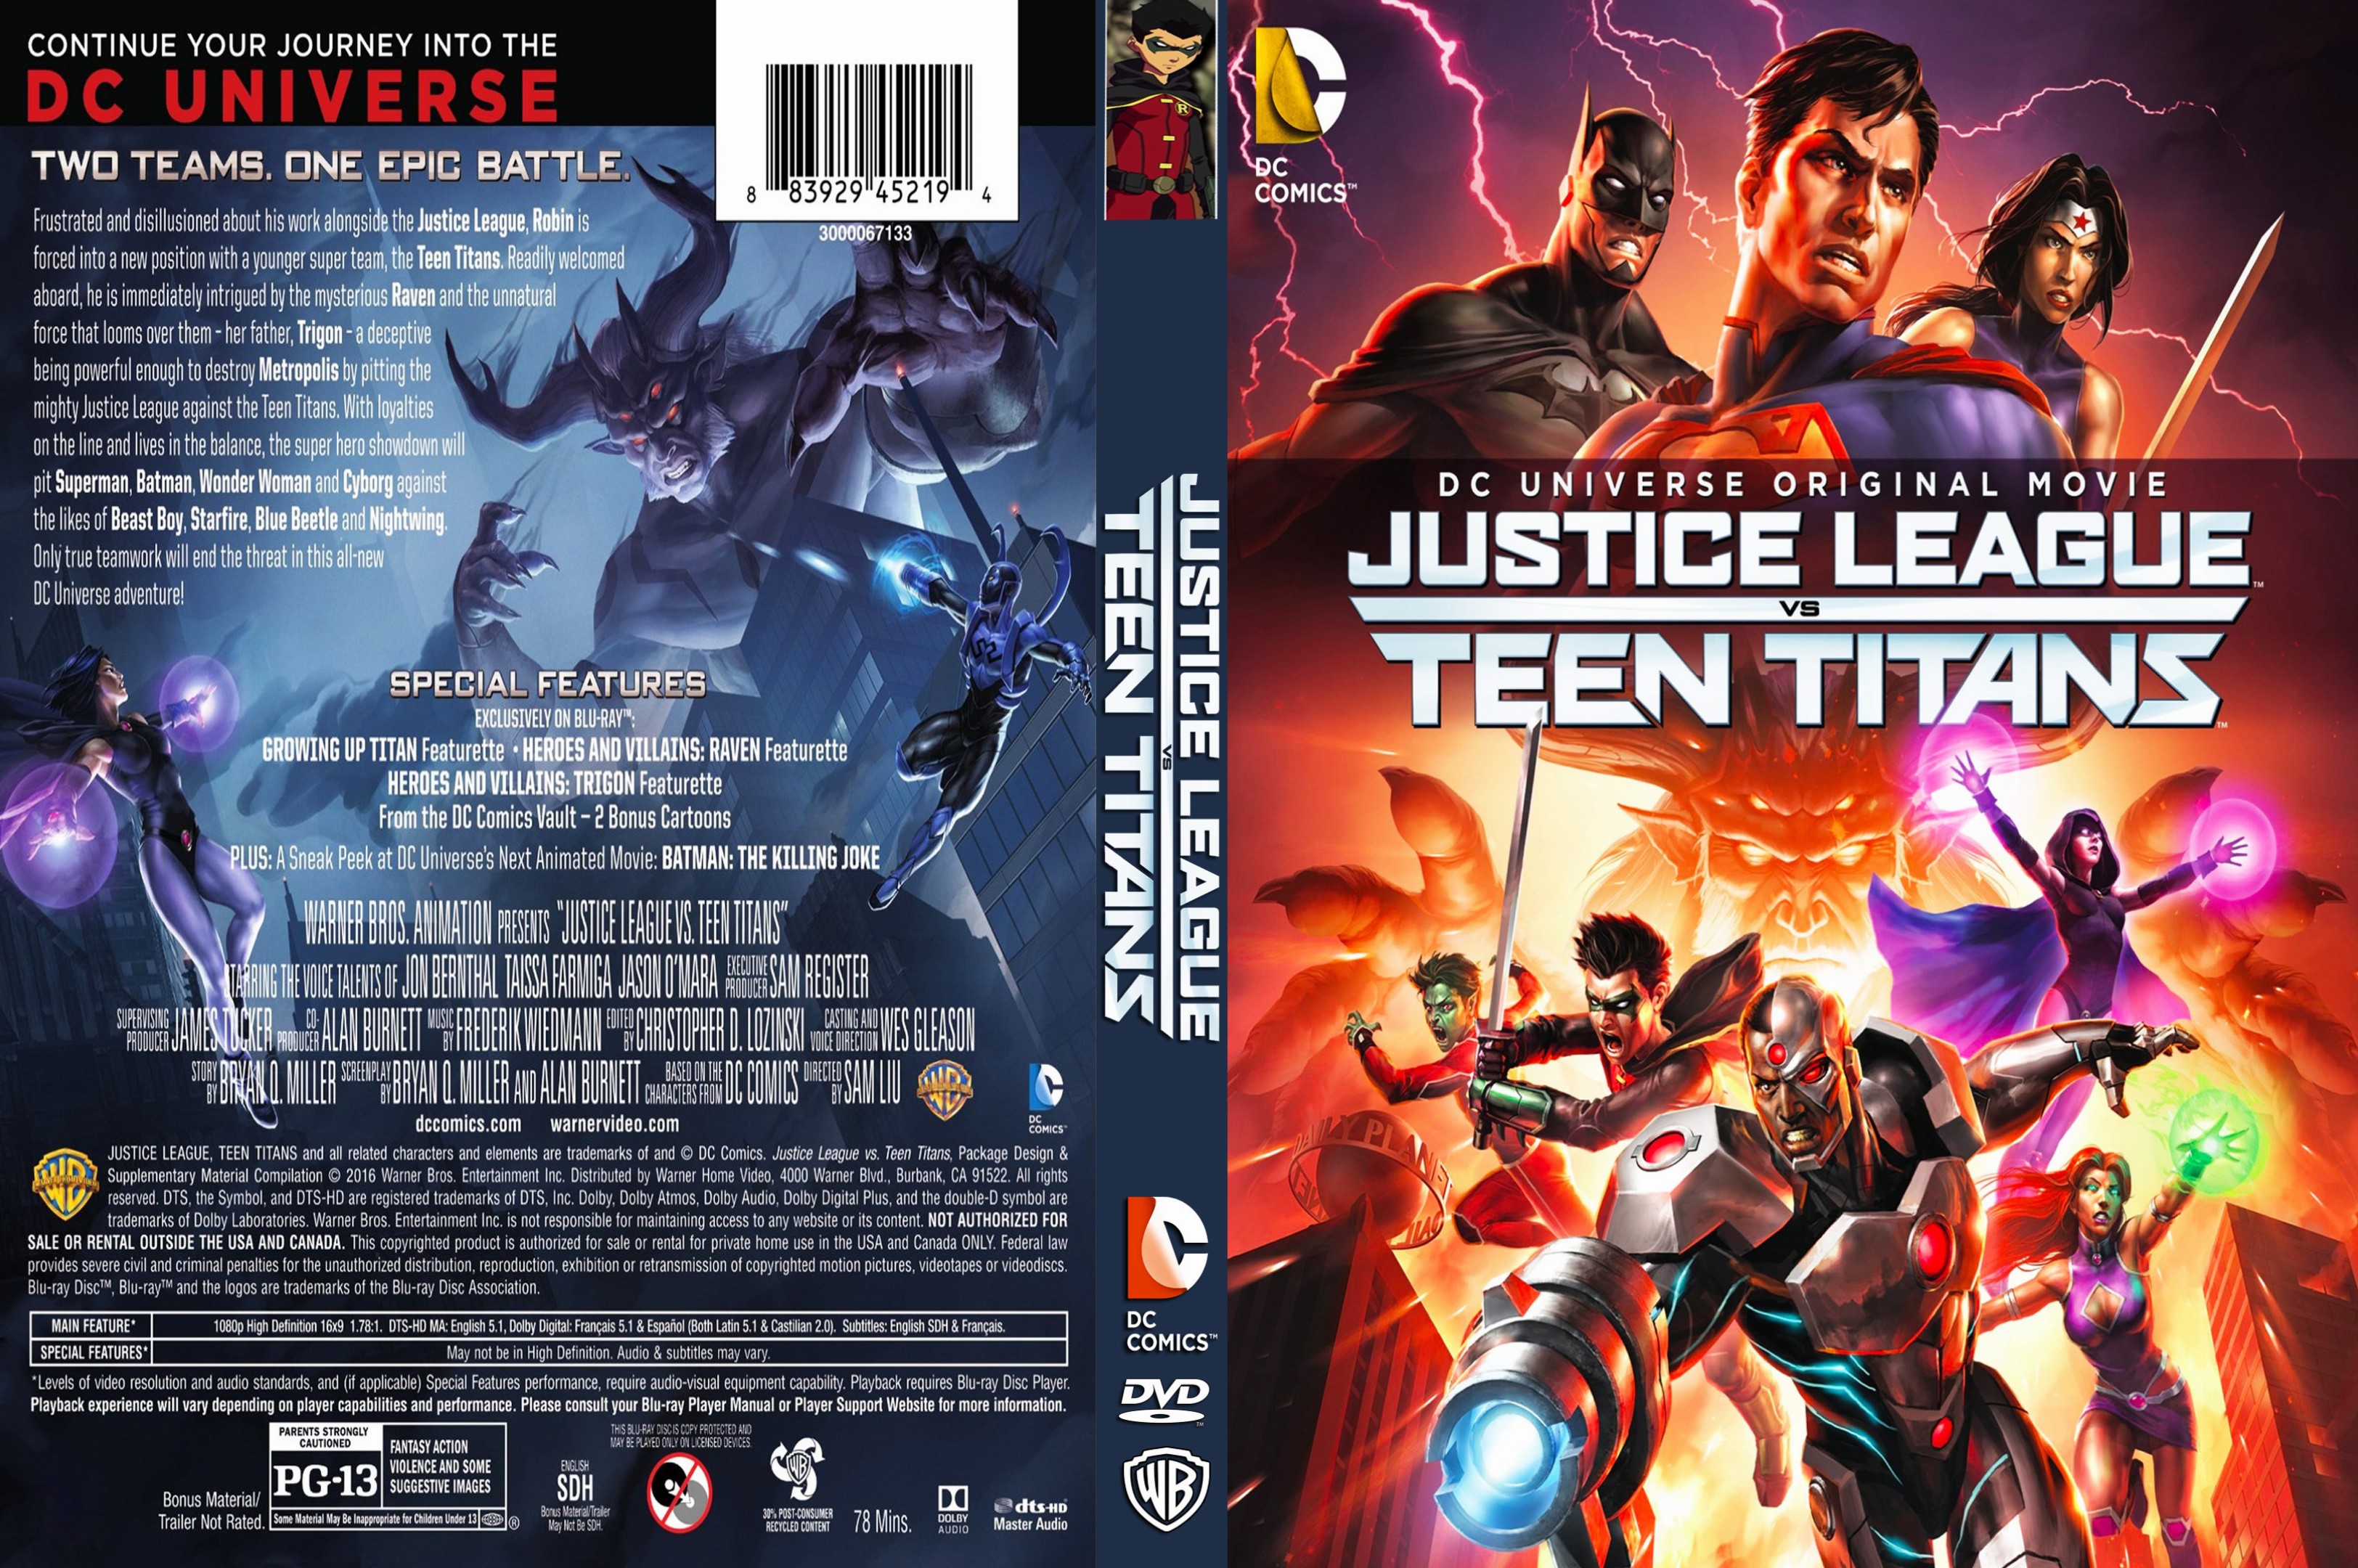 justice league vs teen titans full movie 480p